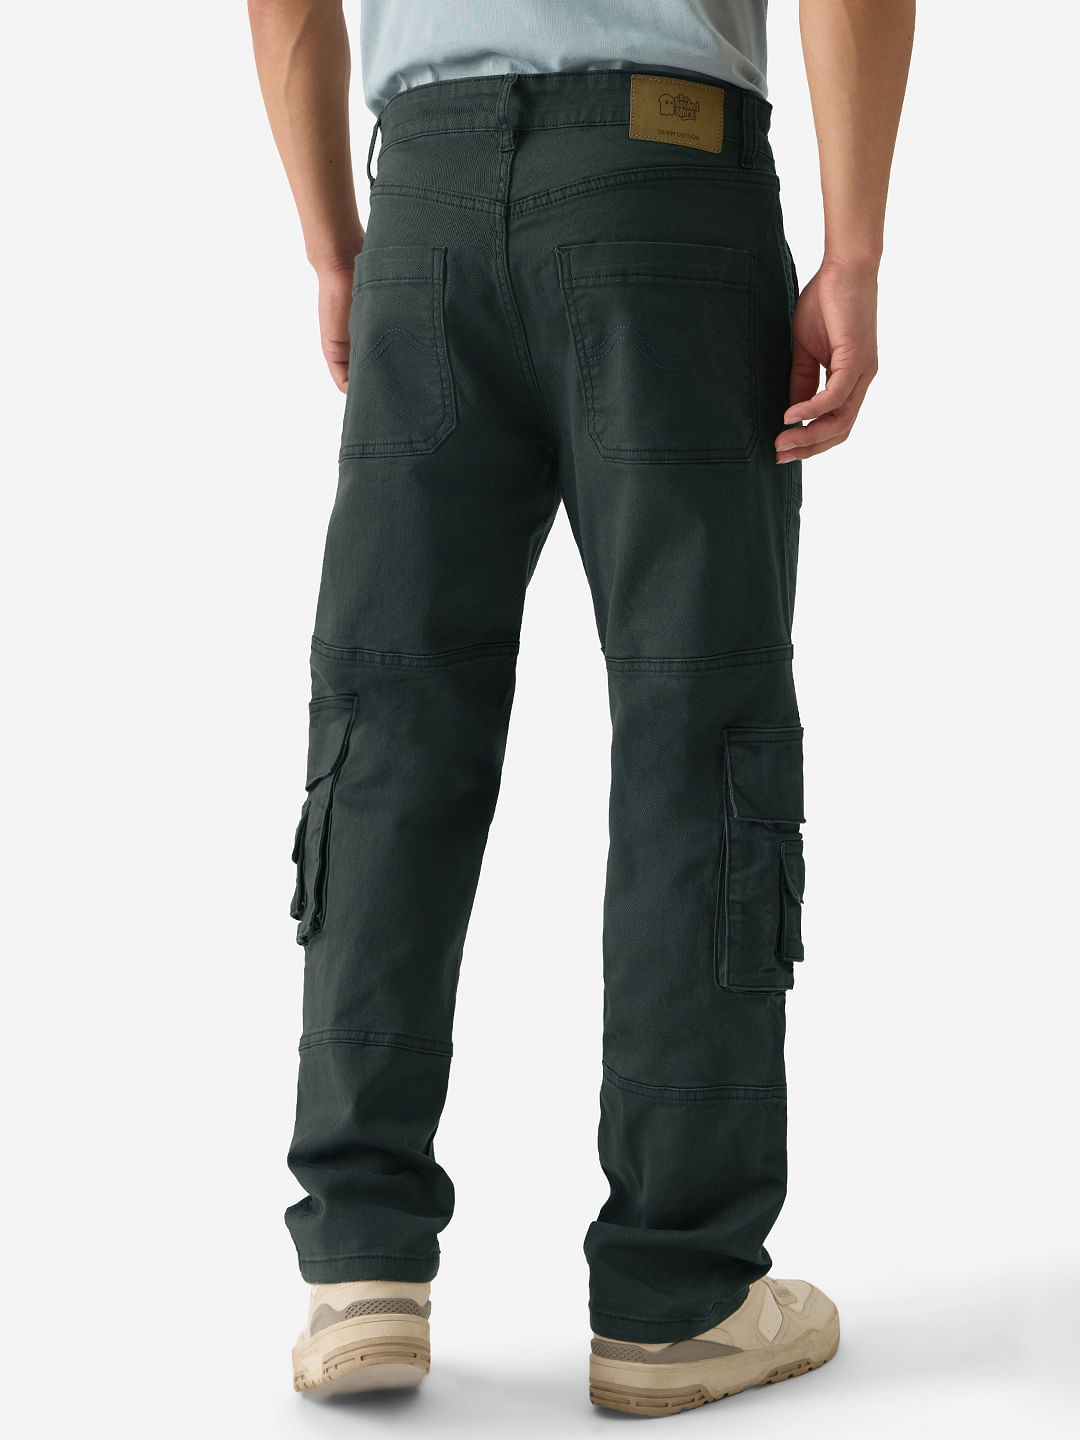 Buy Solids: Greenlake Men Cargo Pants Online